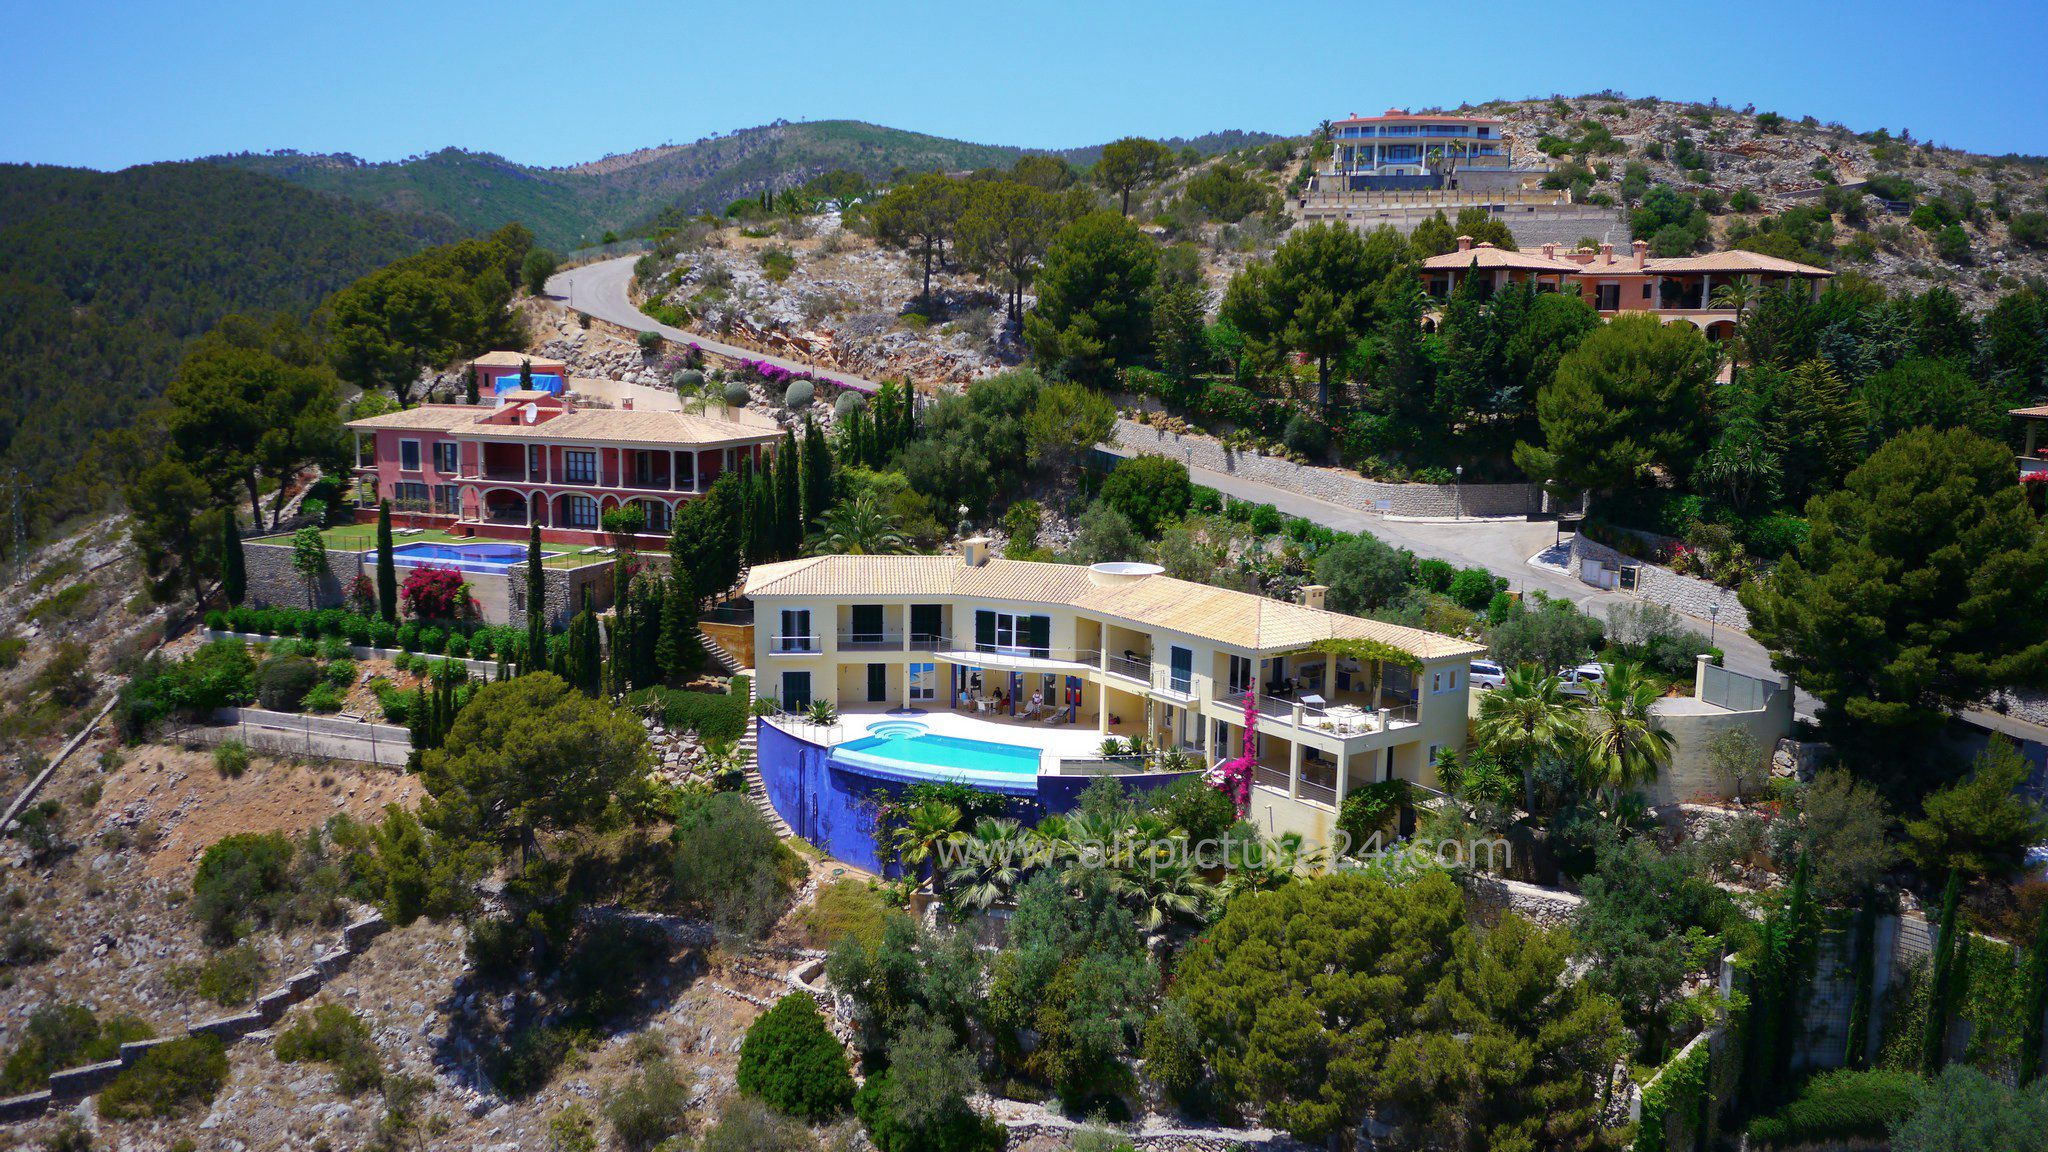 Luftaufnahmen von Immobilie oder Haus auf Mallorca  weitere Luftbilder sind immer möglich